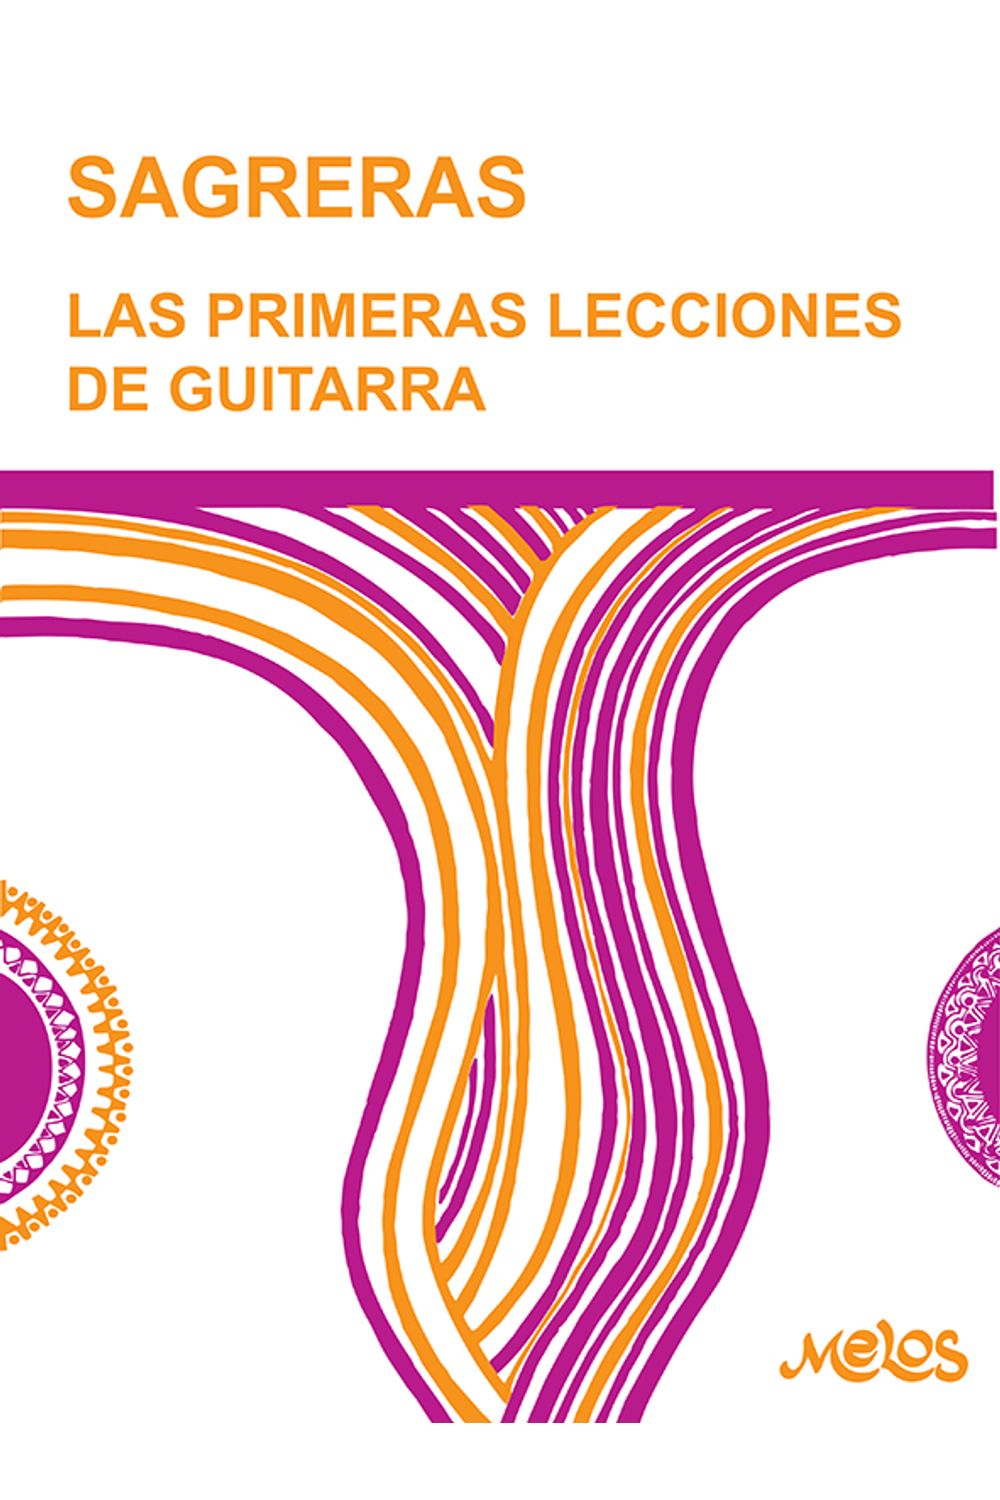 bm-ba9500-las-primeras-lecciones-de-guitarra-espana-melos-ediciones-musicales-9789876111249